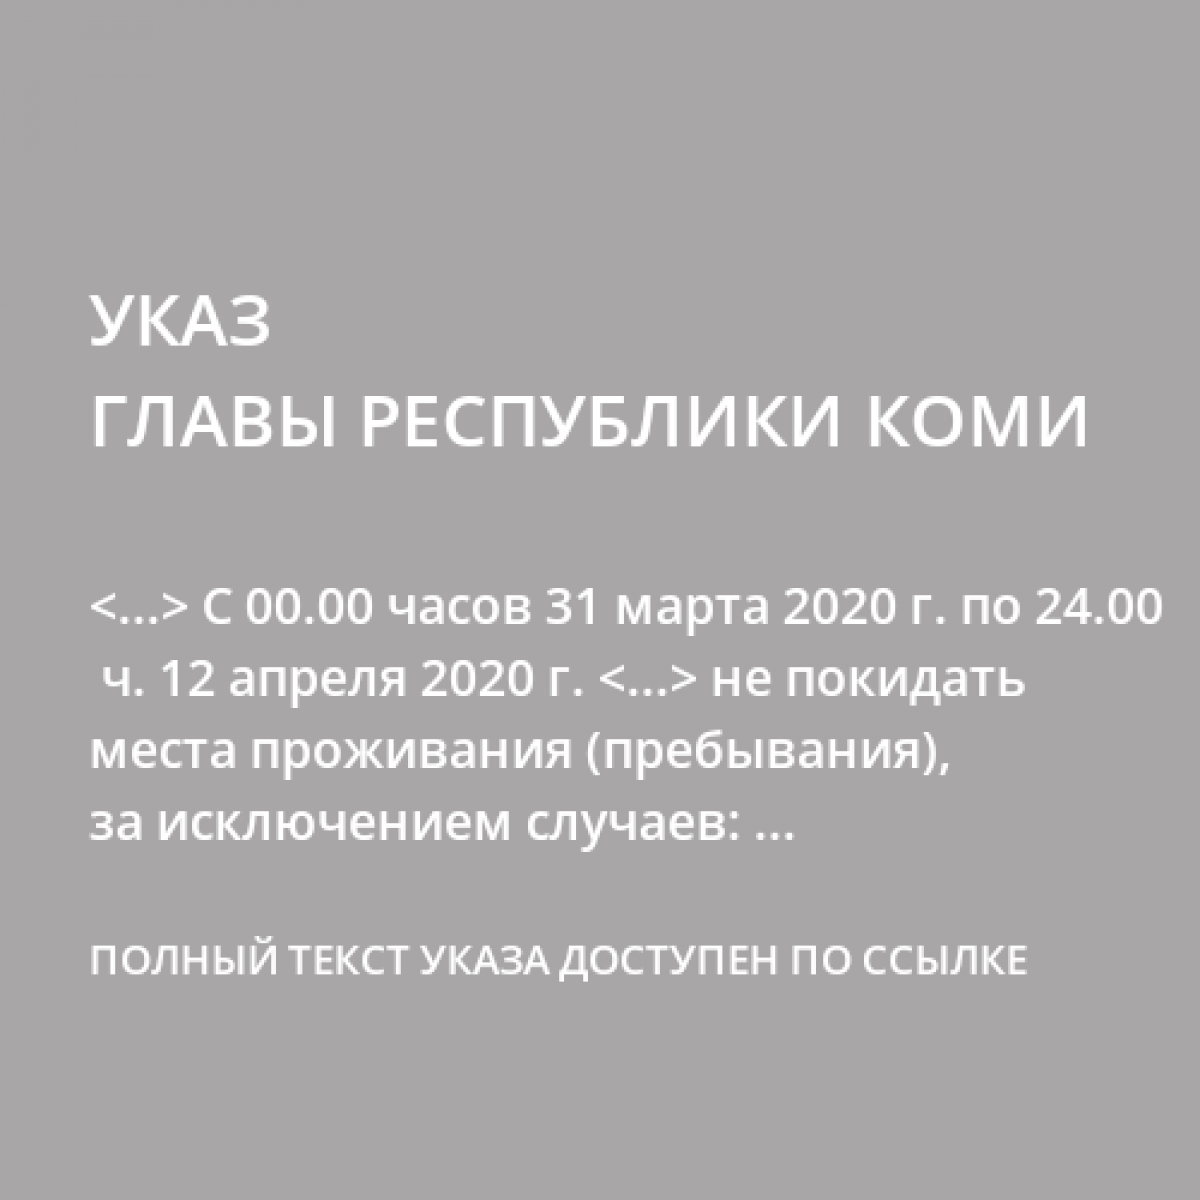 Указ главы республики Коми